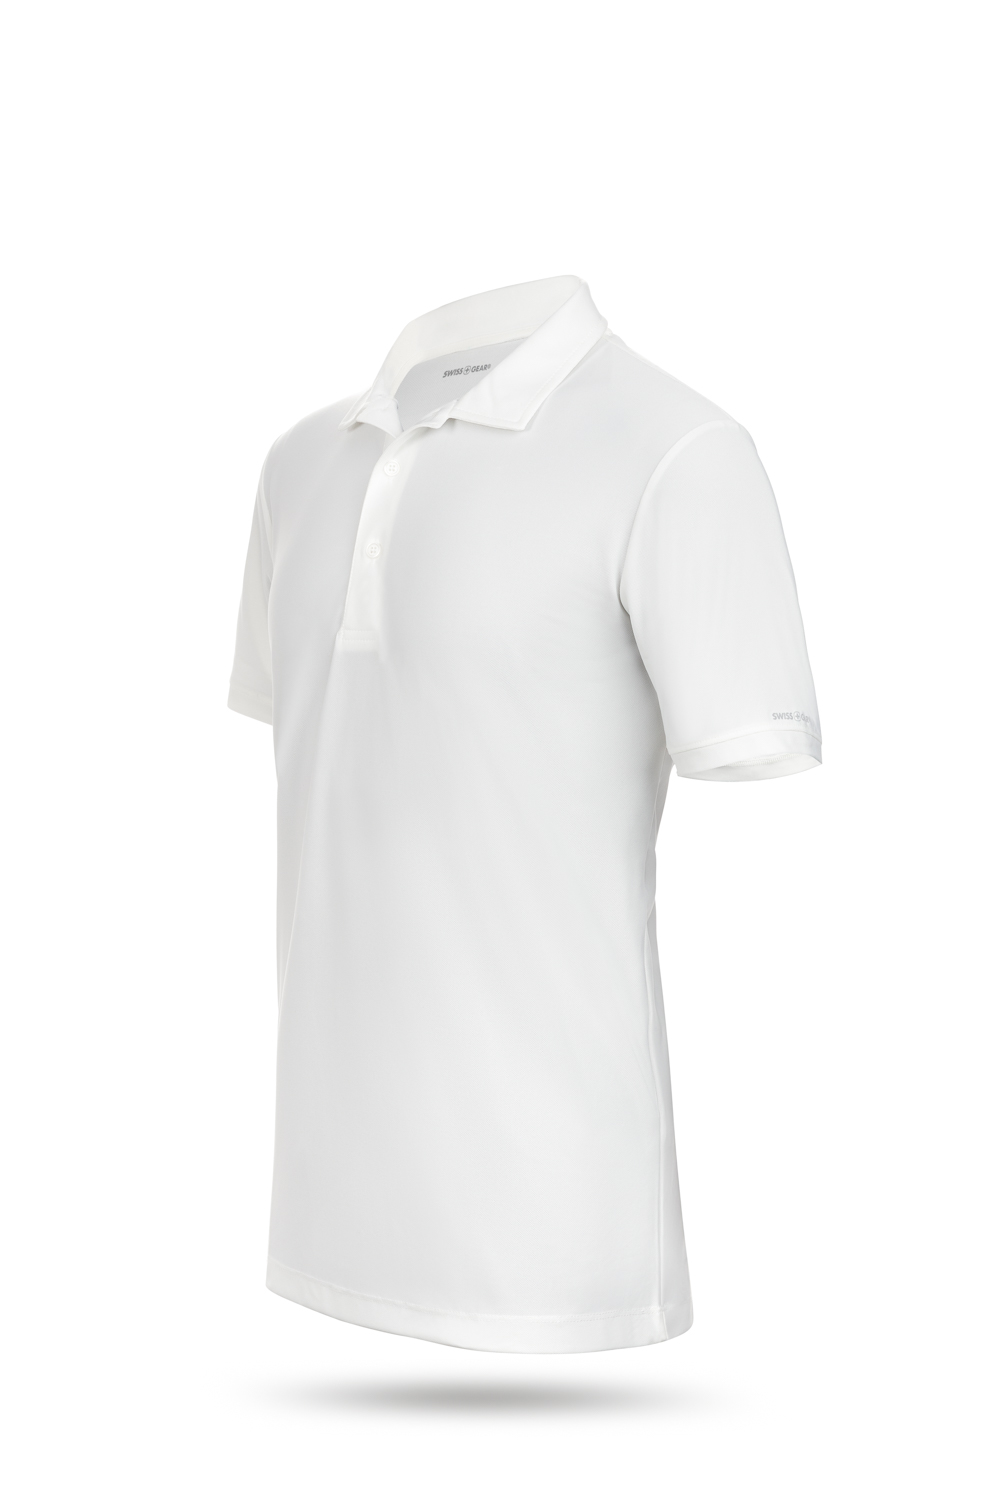 Swissgear 1000 Golf Polo Shirt White,Silver Dime Worth